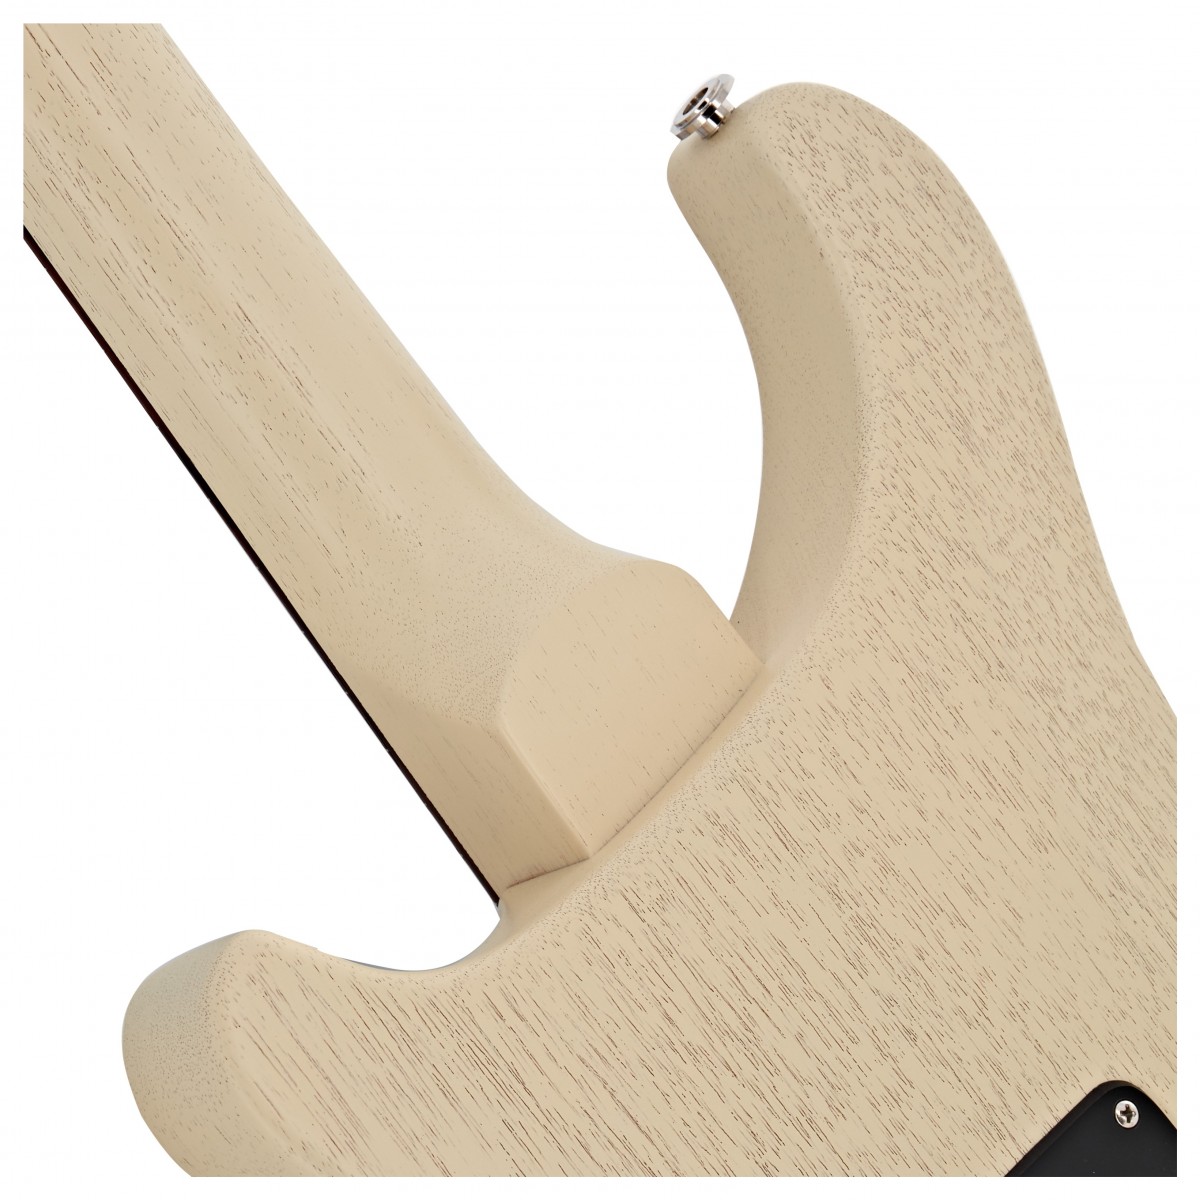 Prs S2 Standard 22 Satin Usa Hh Trem Rw - Antique White - Guitarra eléctrica de doble corte. - Variation 4